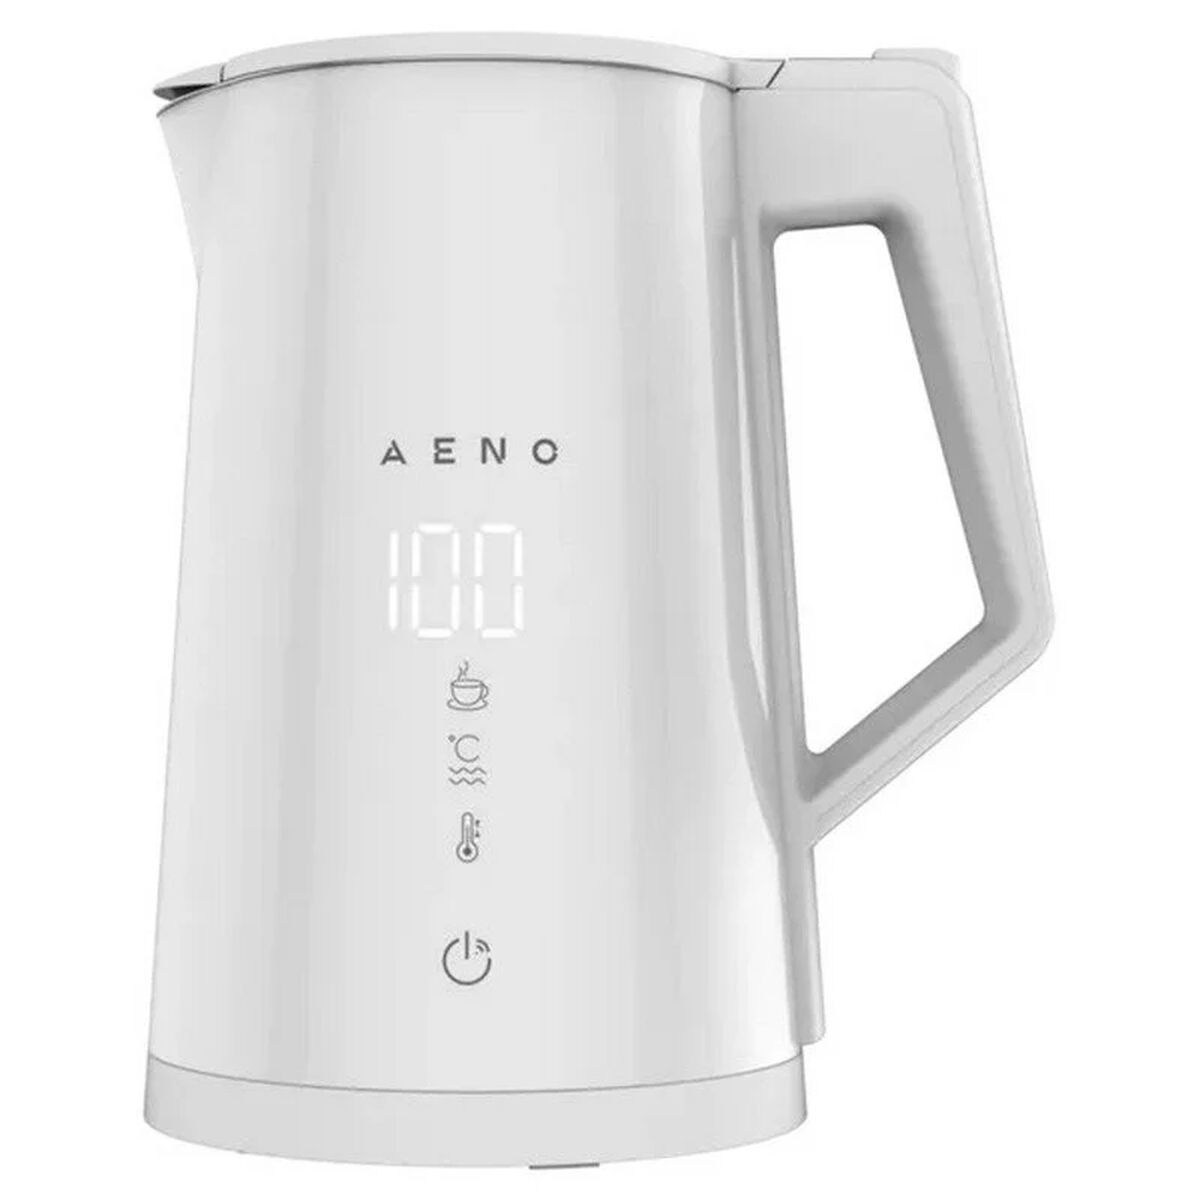 Wasserkocher Aeno EK8S Weiß 2200 W